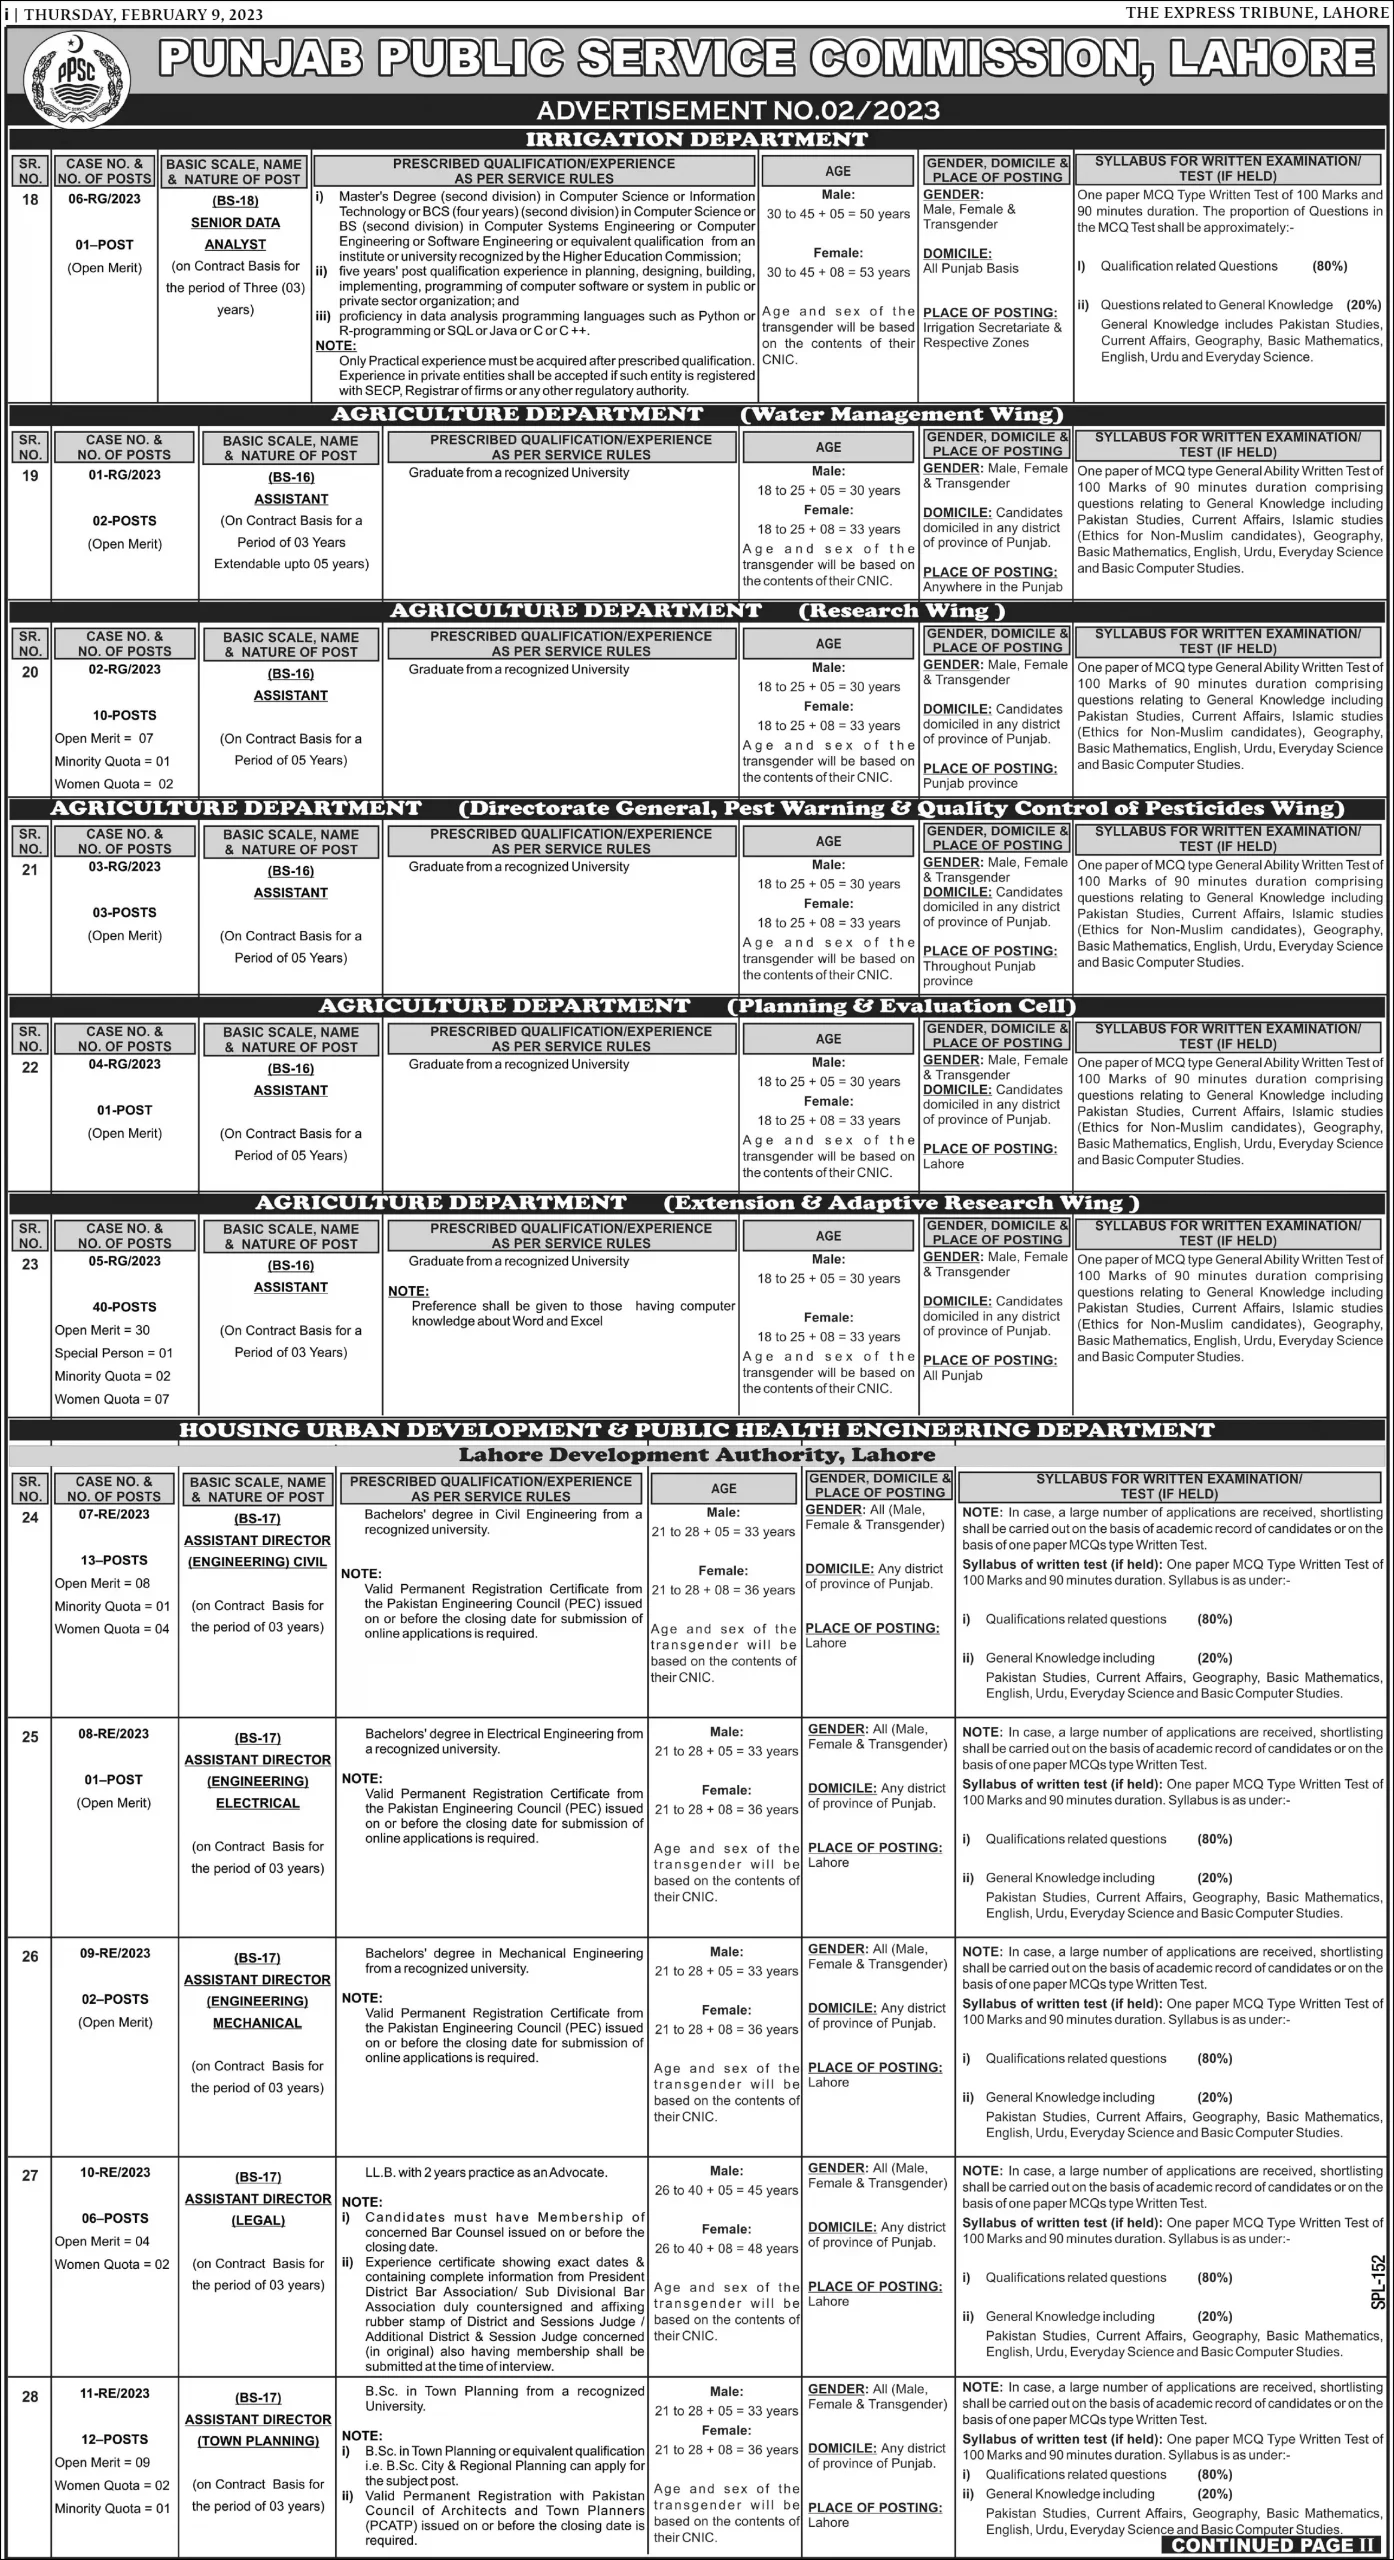 Punjab Public Service Commission Ppsc Jobs March 2023 Advertisement